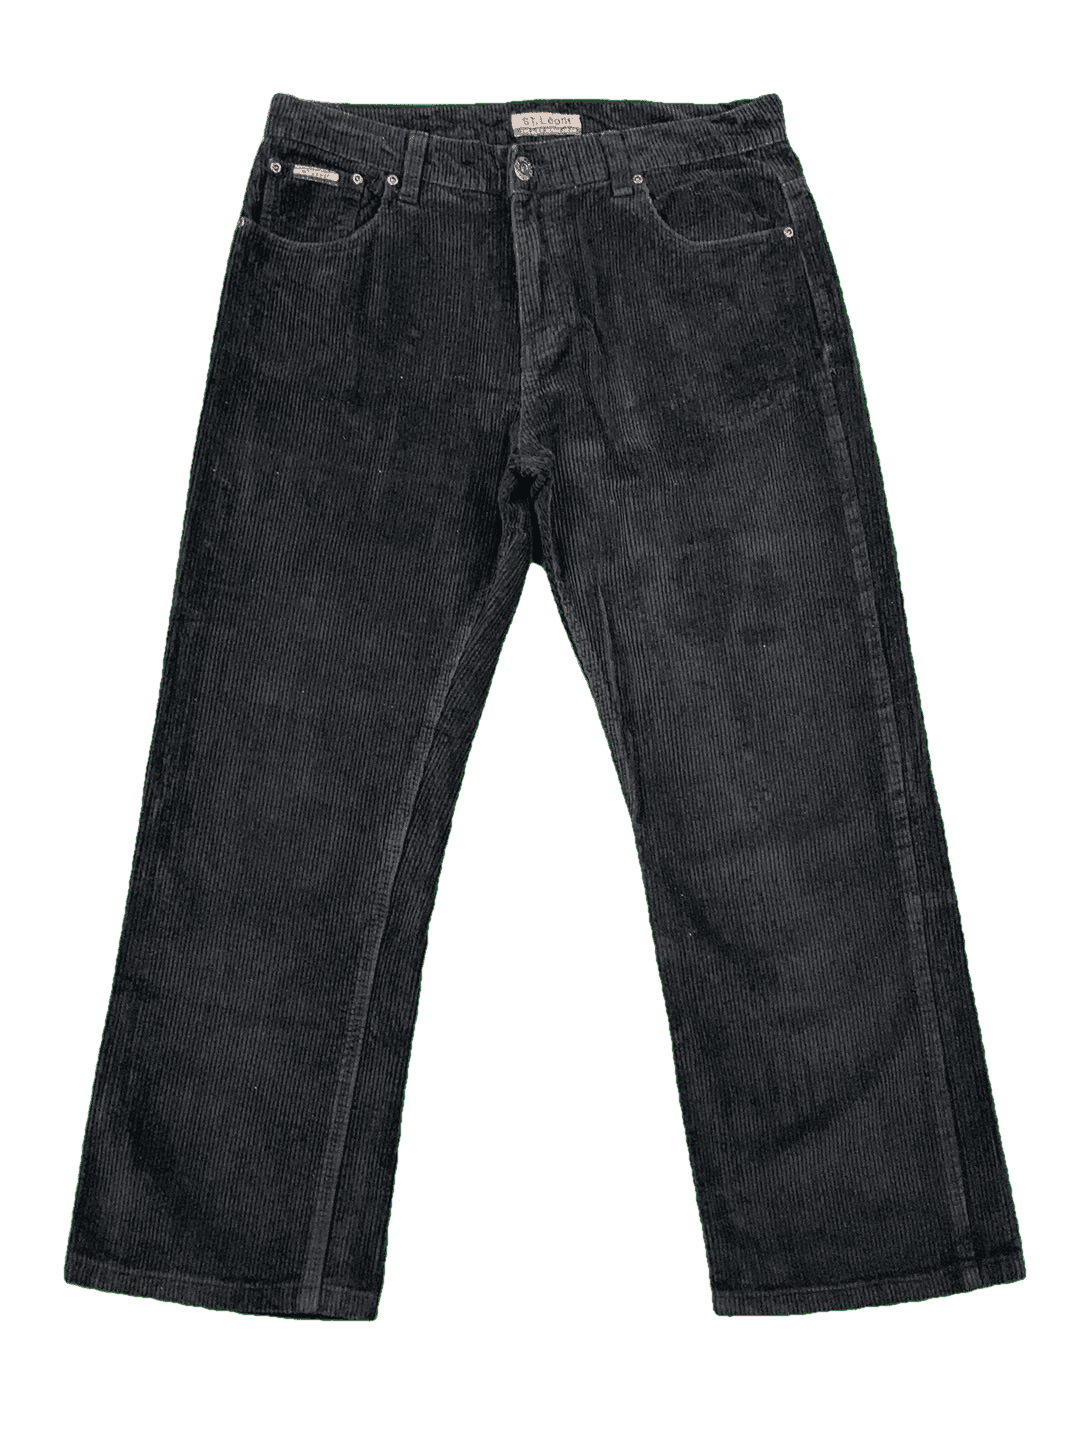 St. Léon'f corduroy trousers 35/29 (M)